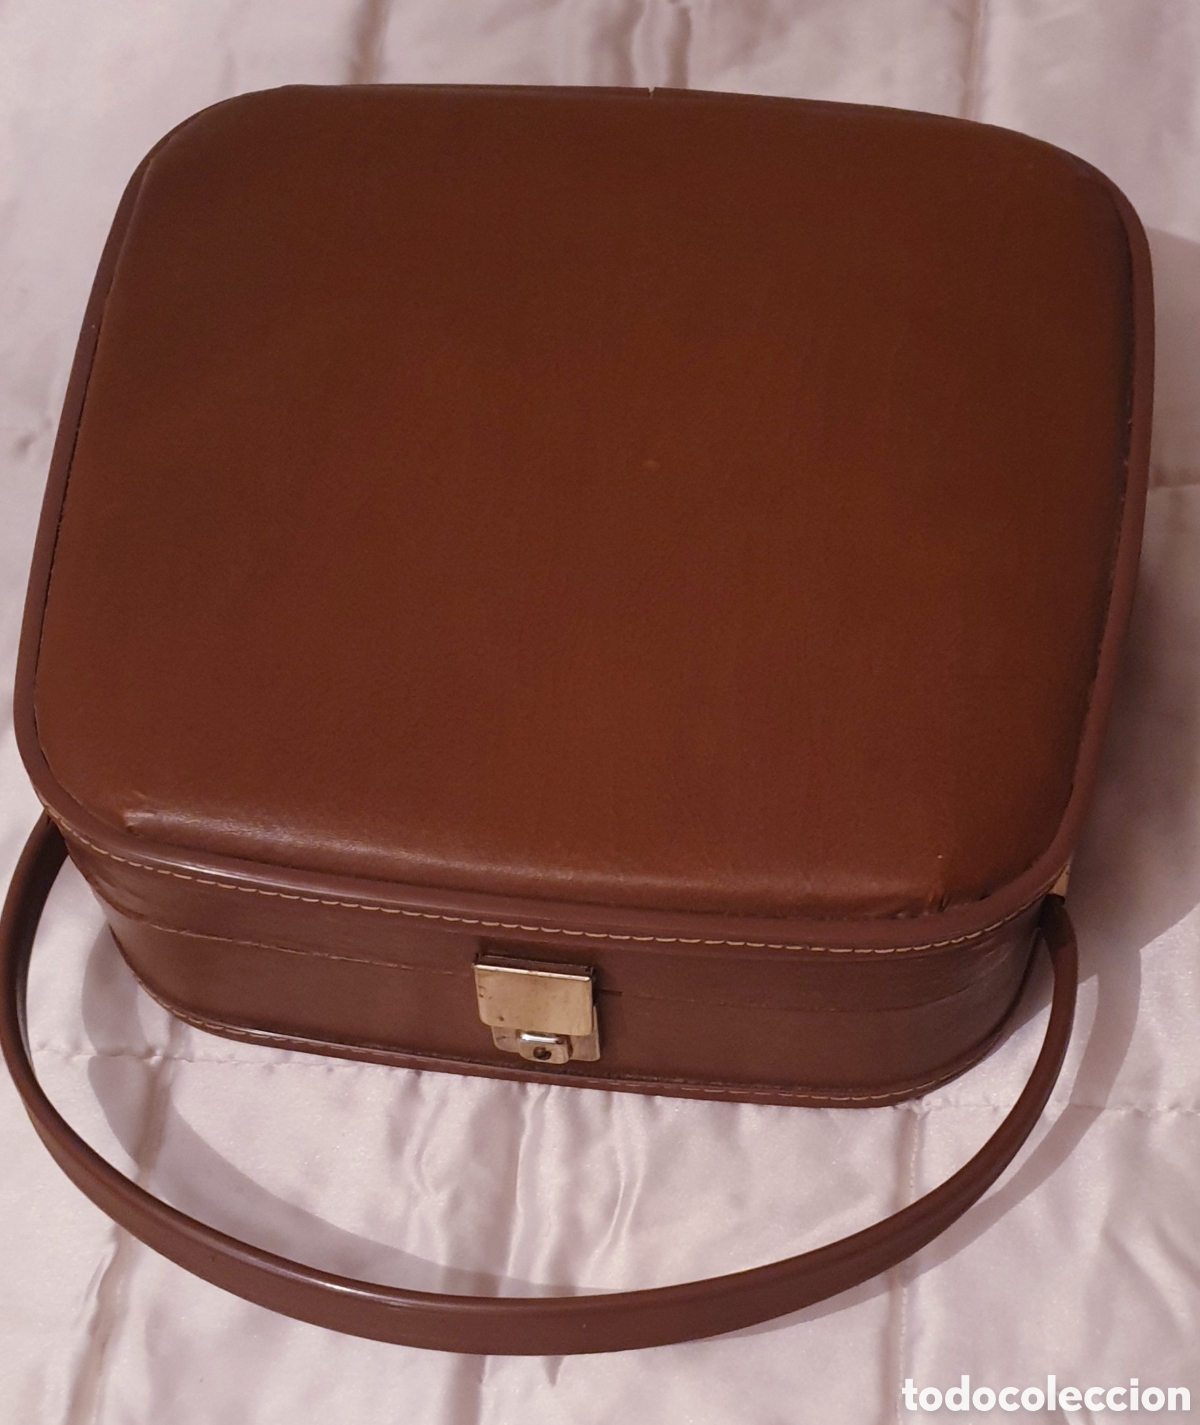 maleta fin de semana años 60 - Compra venta en todocoleccion